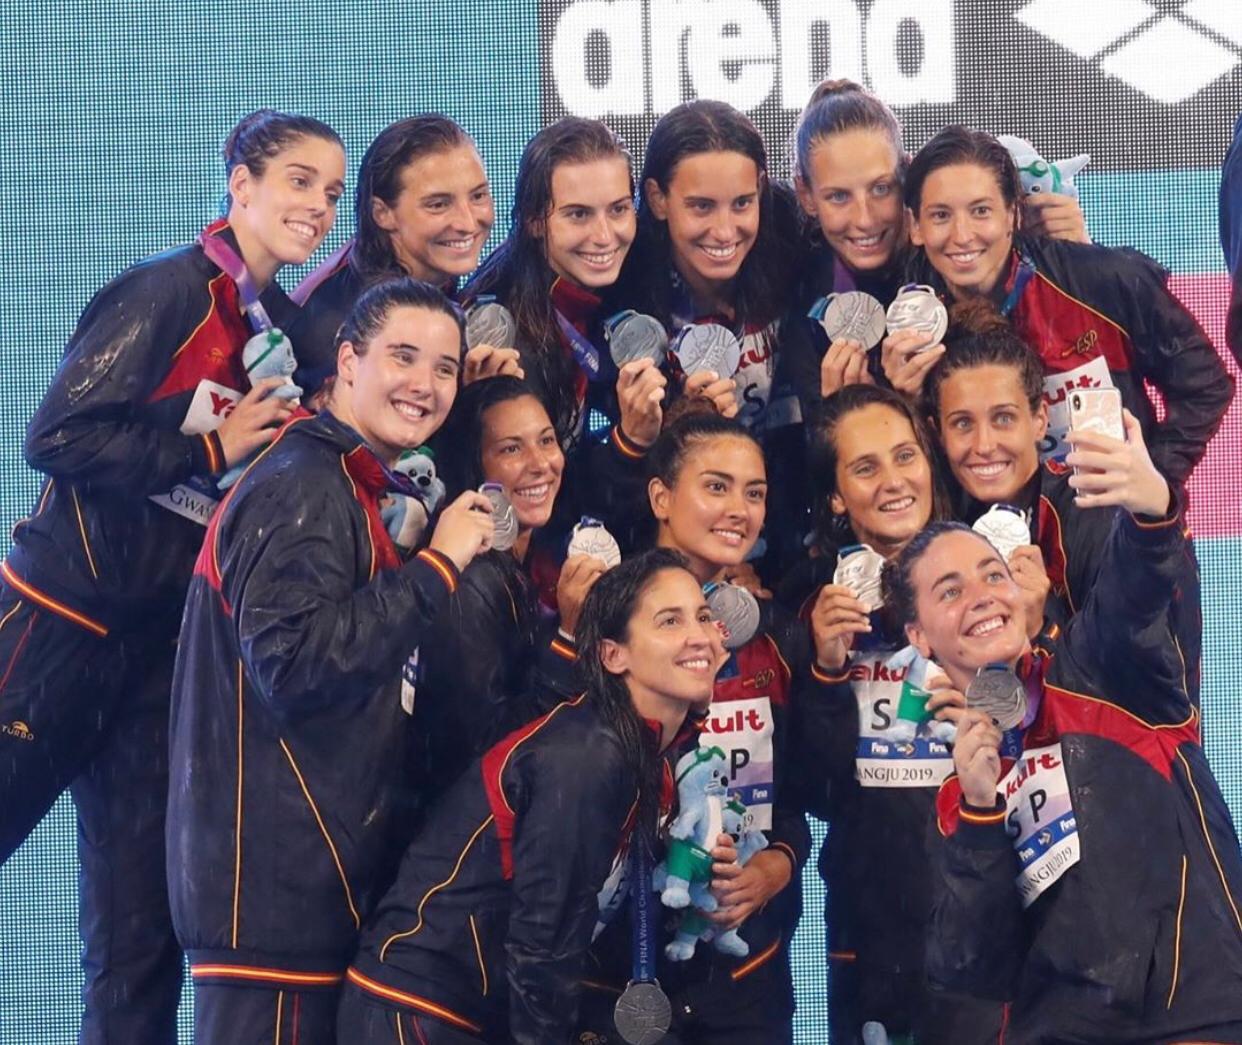 La selecció espanyola femenina de waterpolo amb la medalla de plata | Cedida